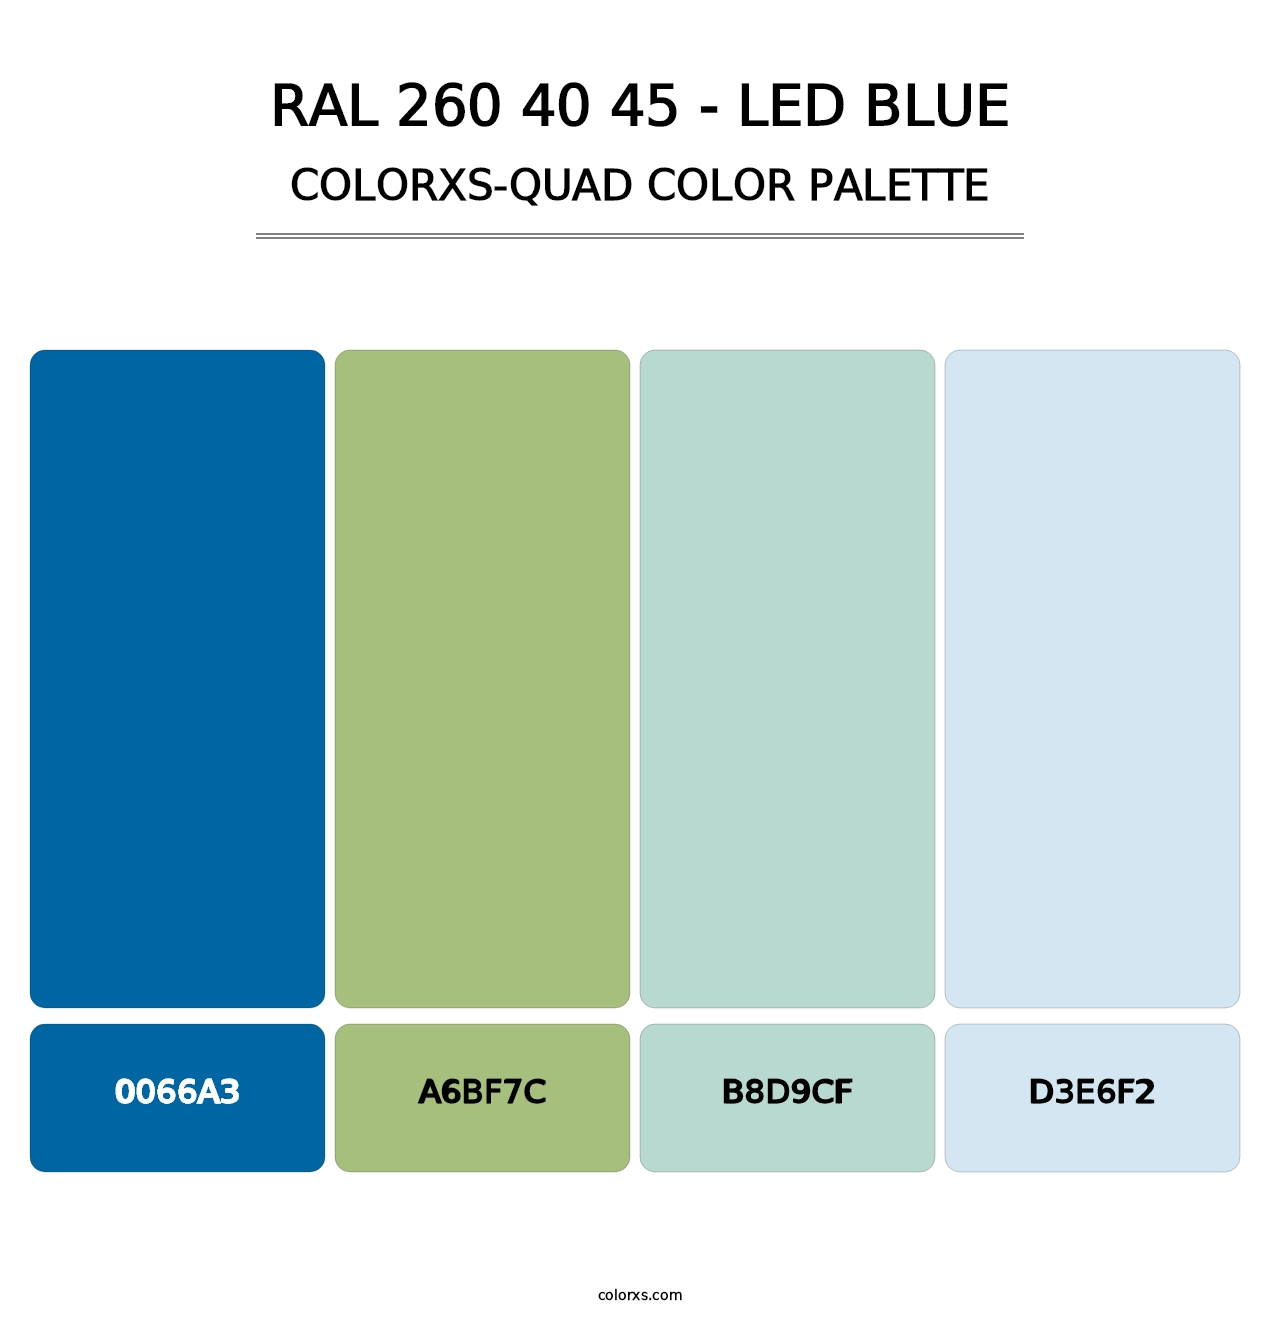 RAL 260 40 45 - LED Blue - Colorxs Quad Palette